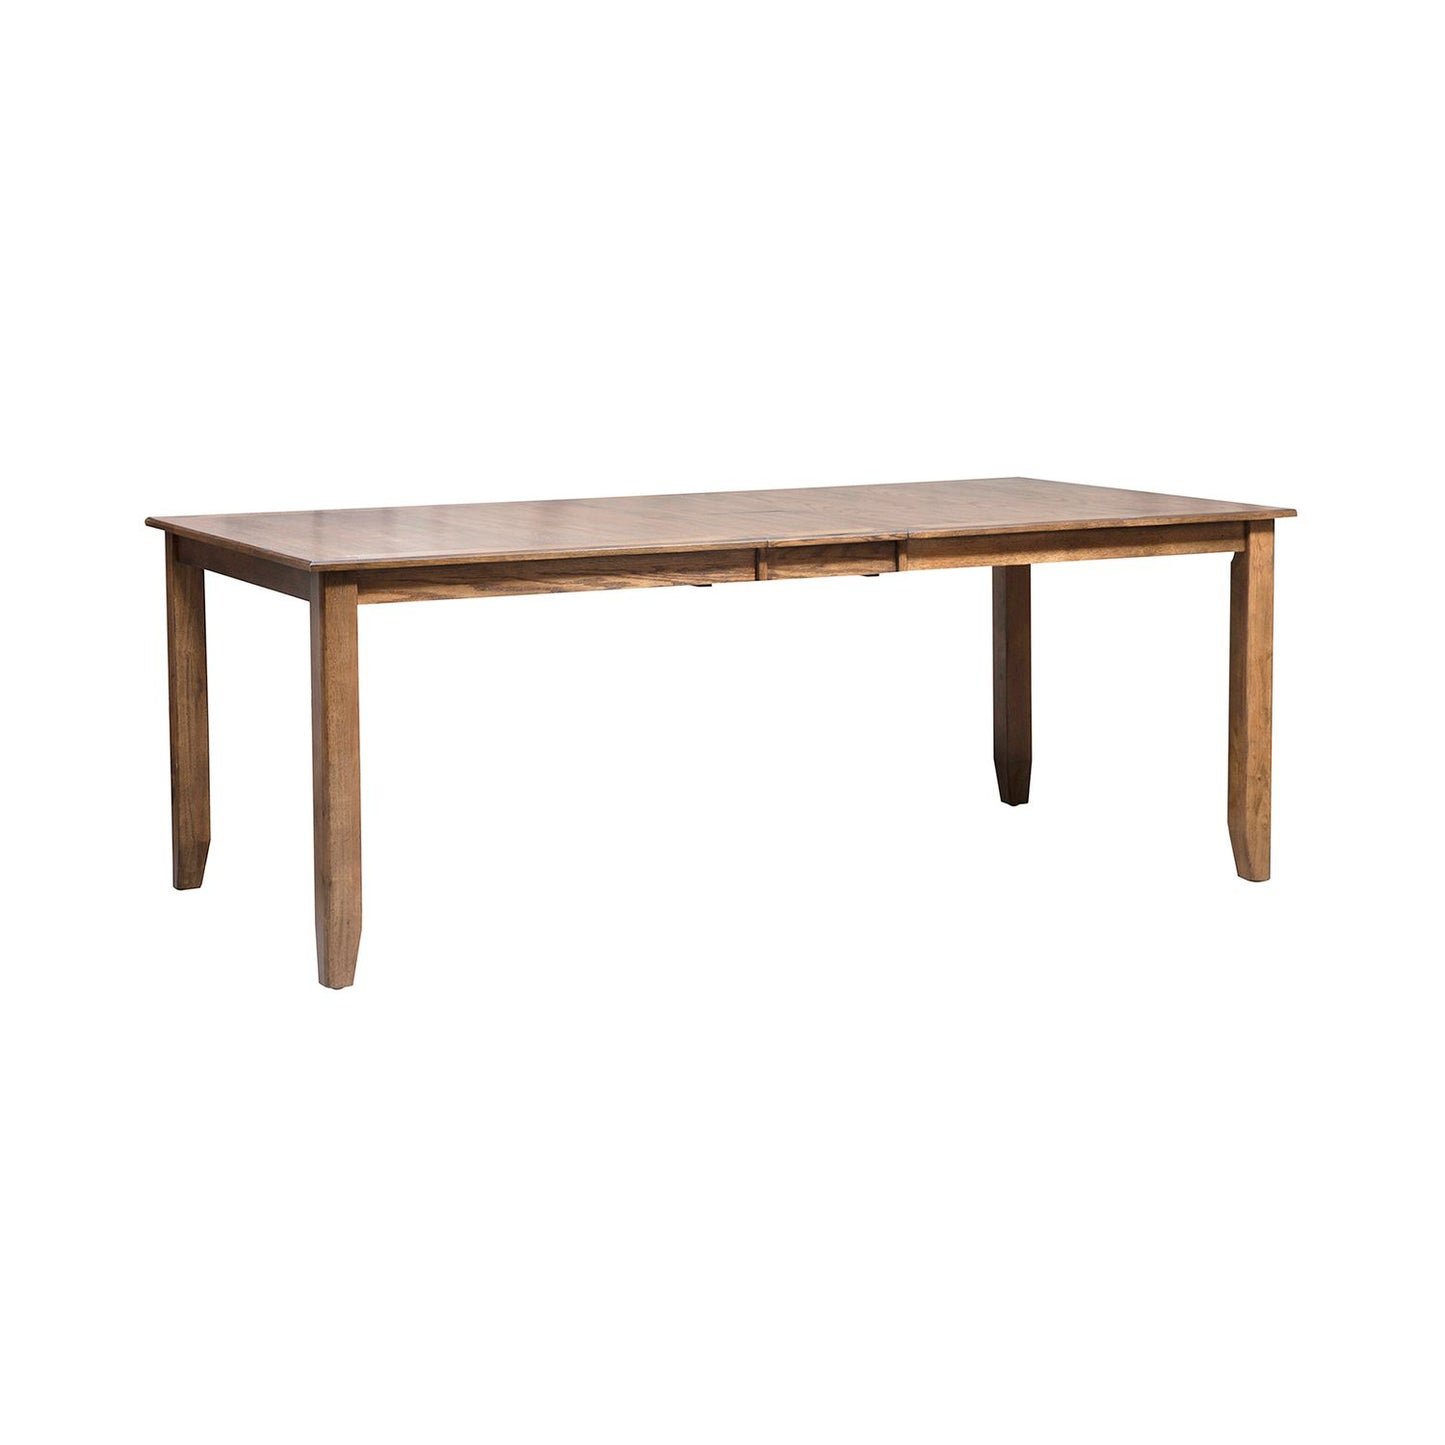 Santa Rosa - 5 Piece Rectangular Table Set